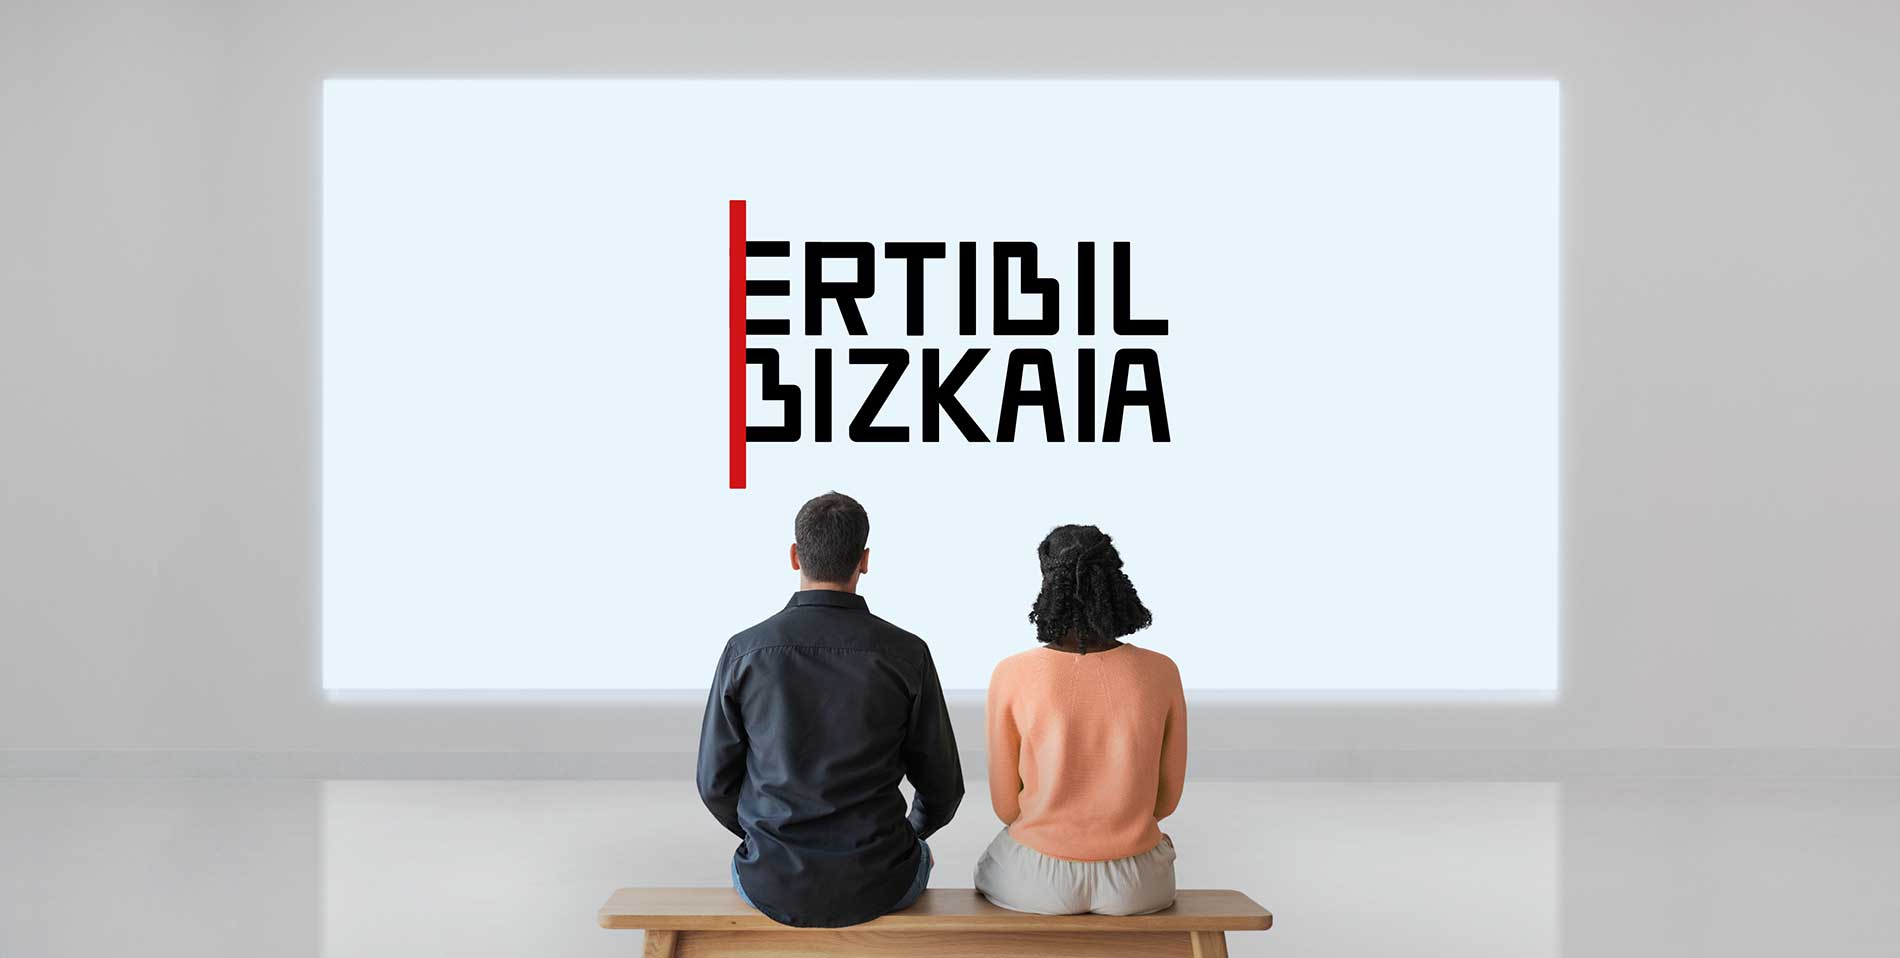 Ertibil Bizkaia - Burutü